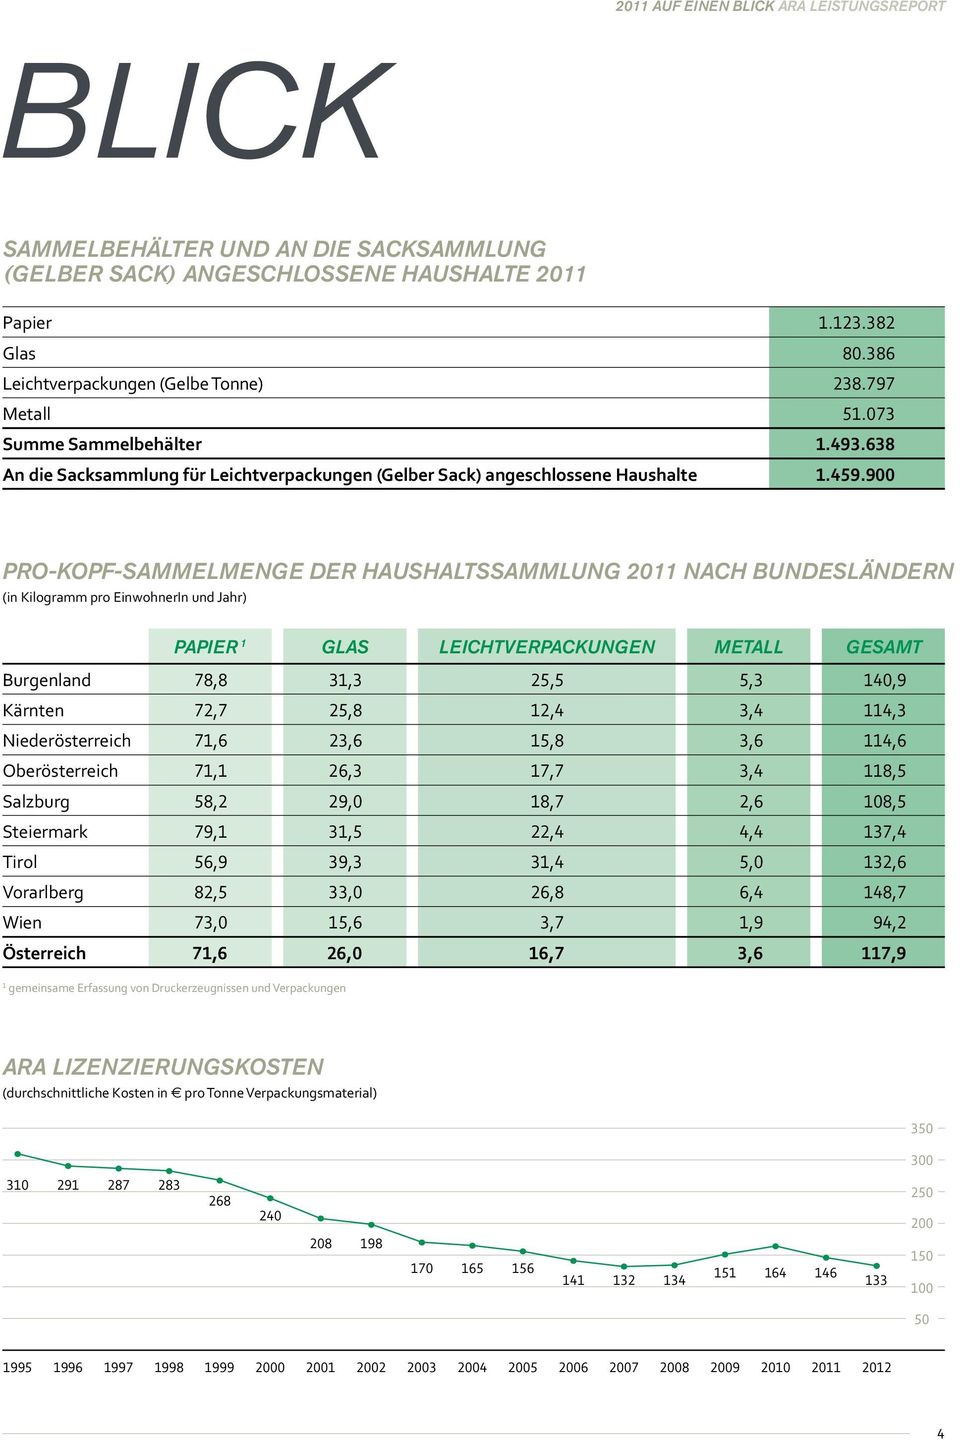 900 Pro-Kopf-SammELmENGE der HaushaltssammLUNG 2011 nach BUNdesländern (in Kilogramm pro EinwohnerIn und Jahr) PAPIEr 1 GLAS LEIChtvERPACKUNGEN Metall Gesamt Burgenland 78,8 31,3 25,5 5,3 140,9